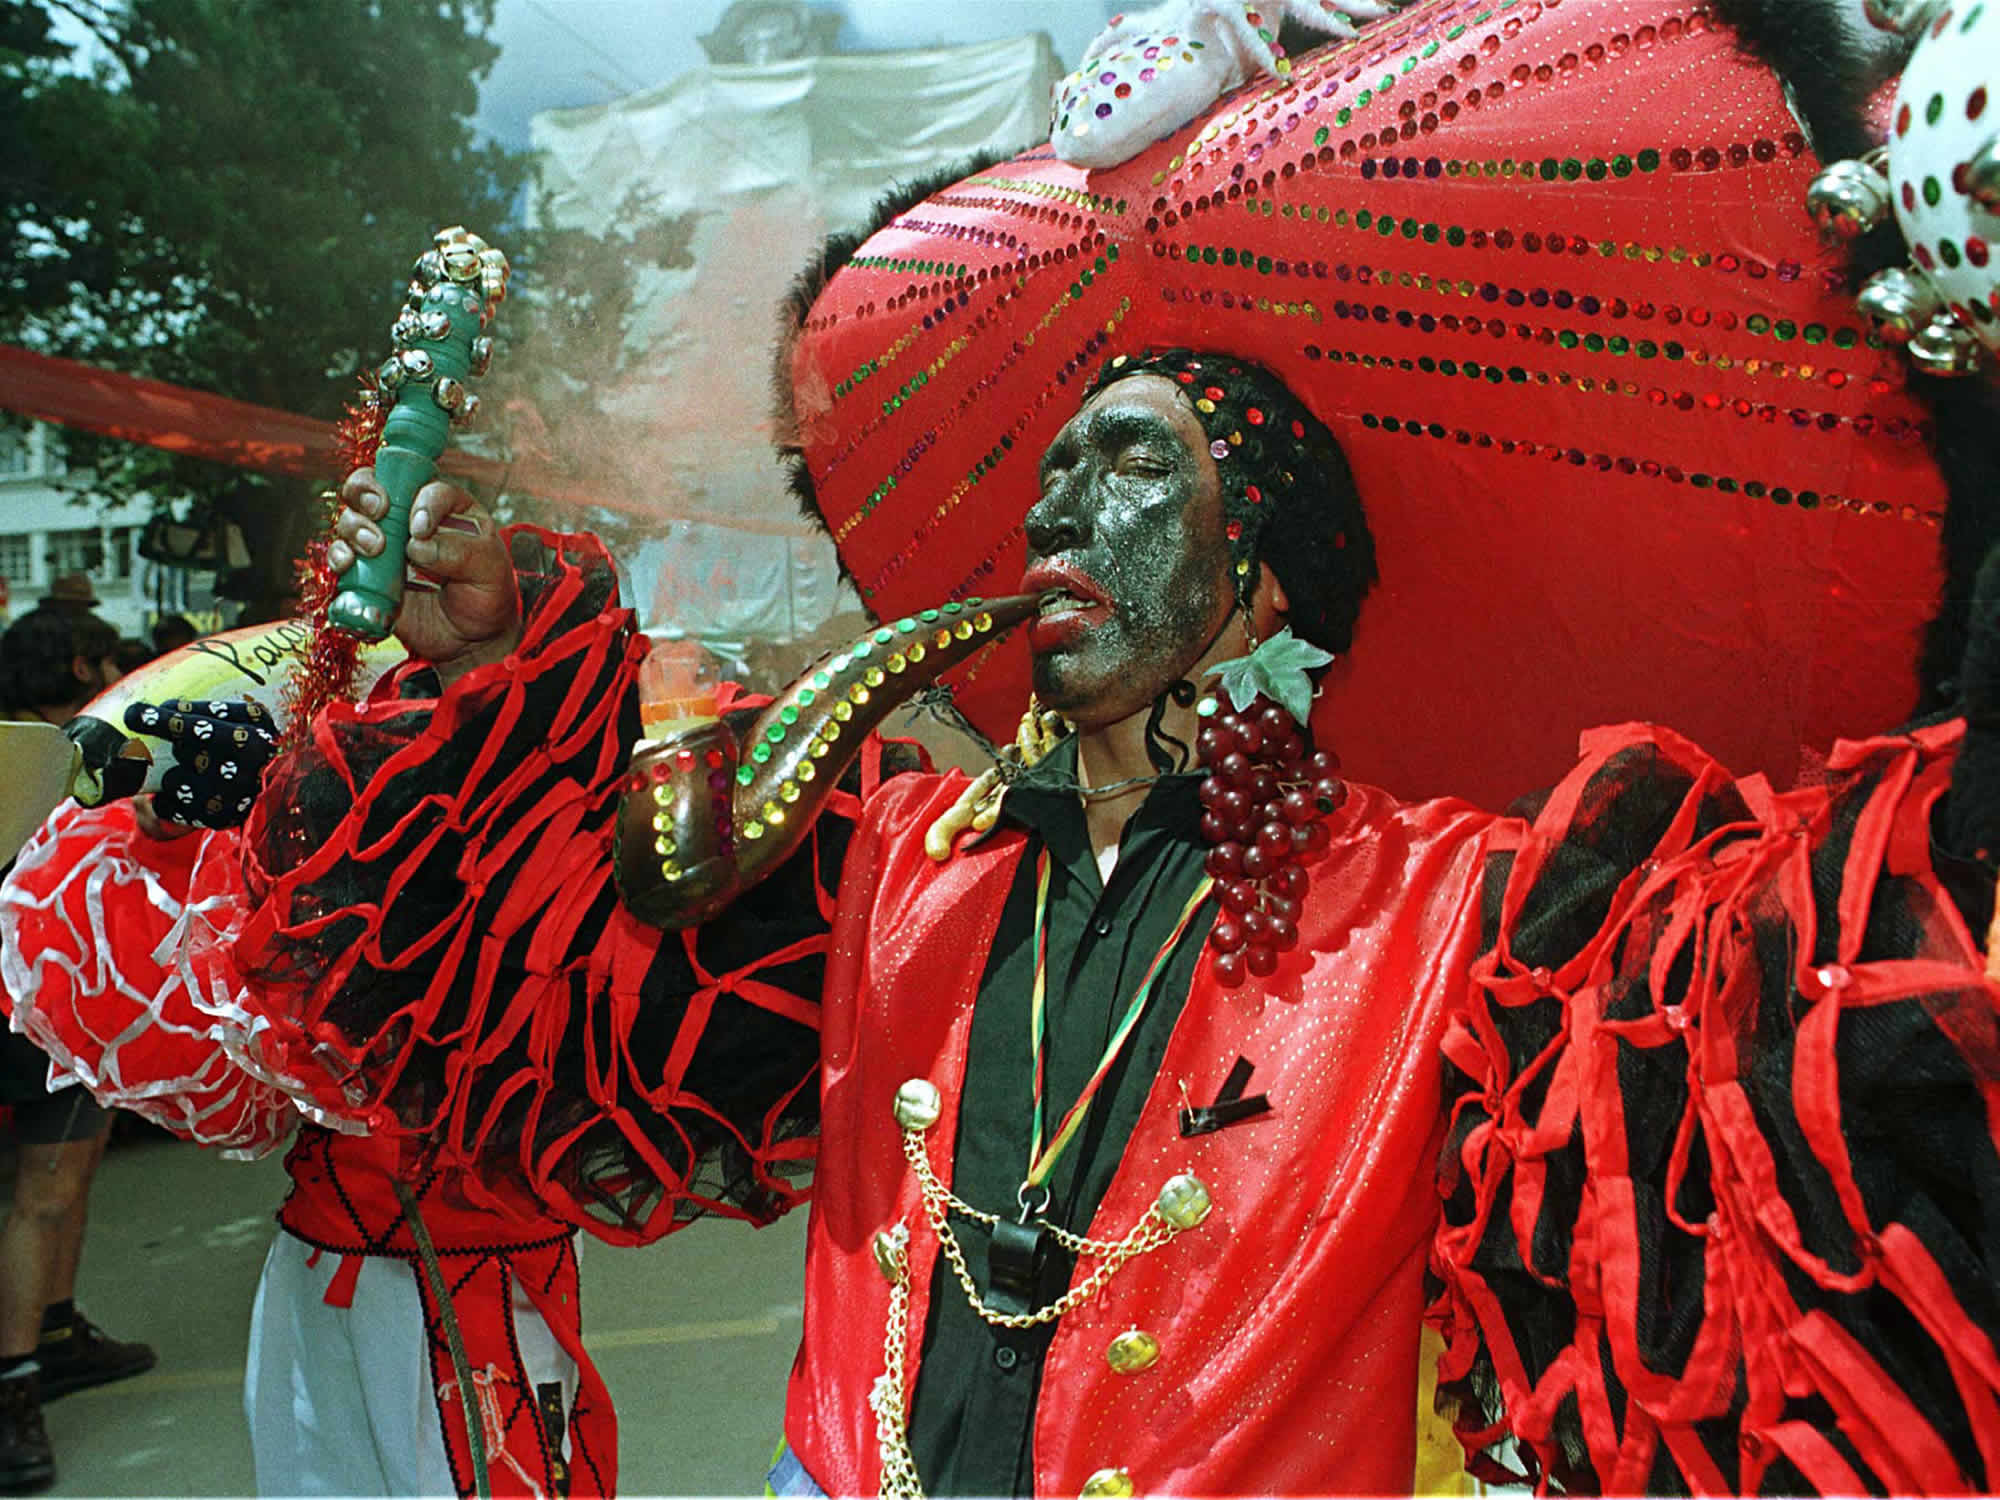 Negritos - Oruro Carnival Dance